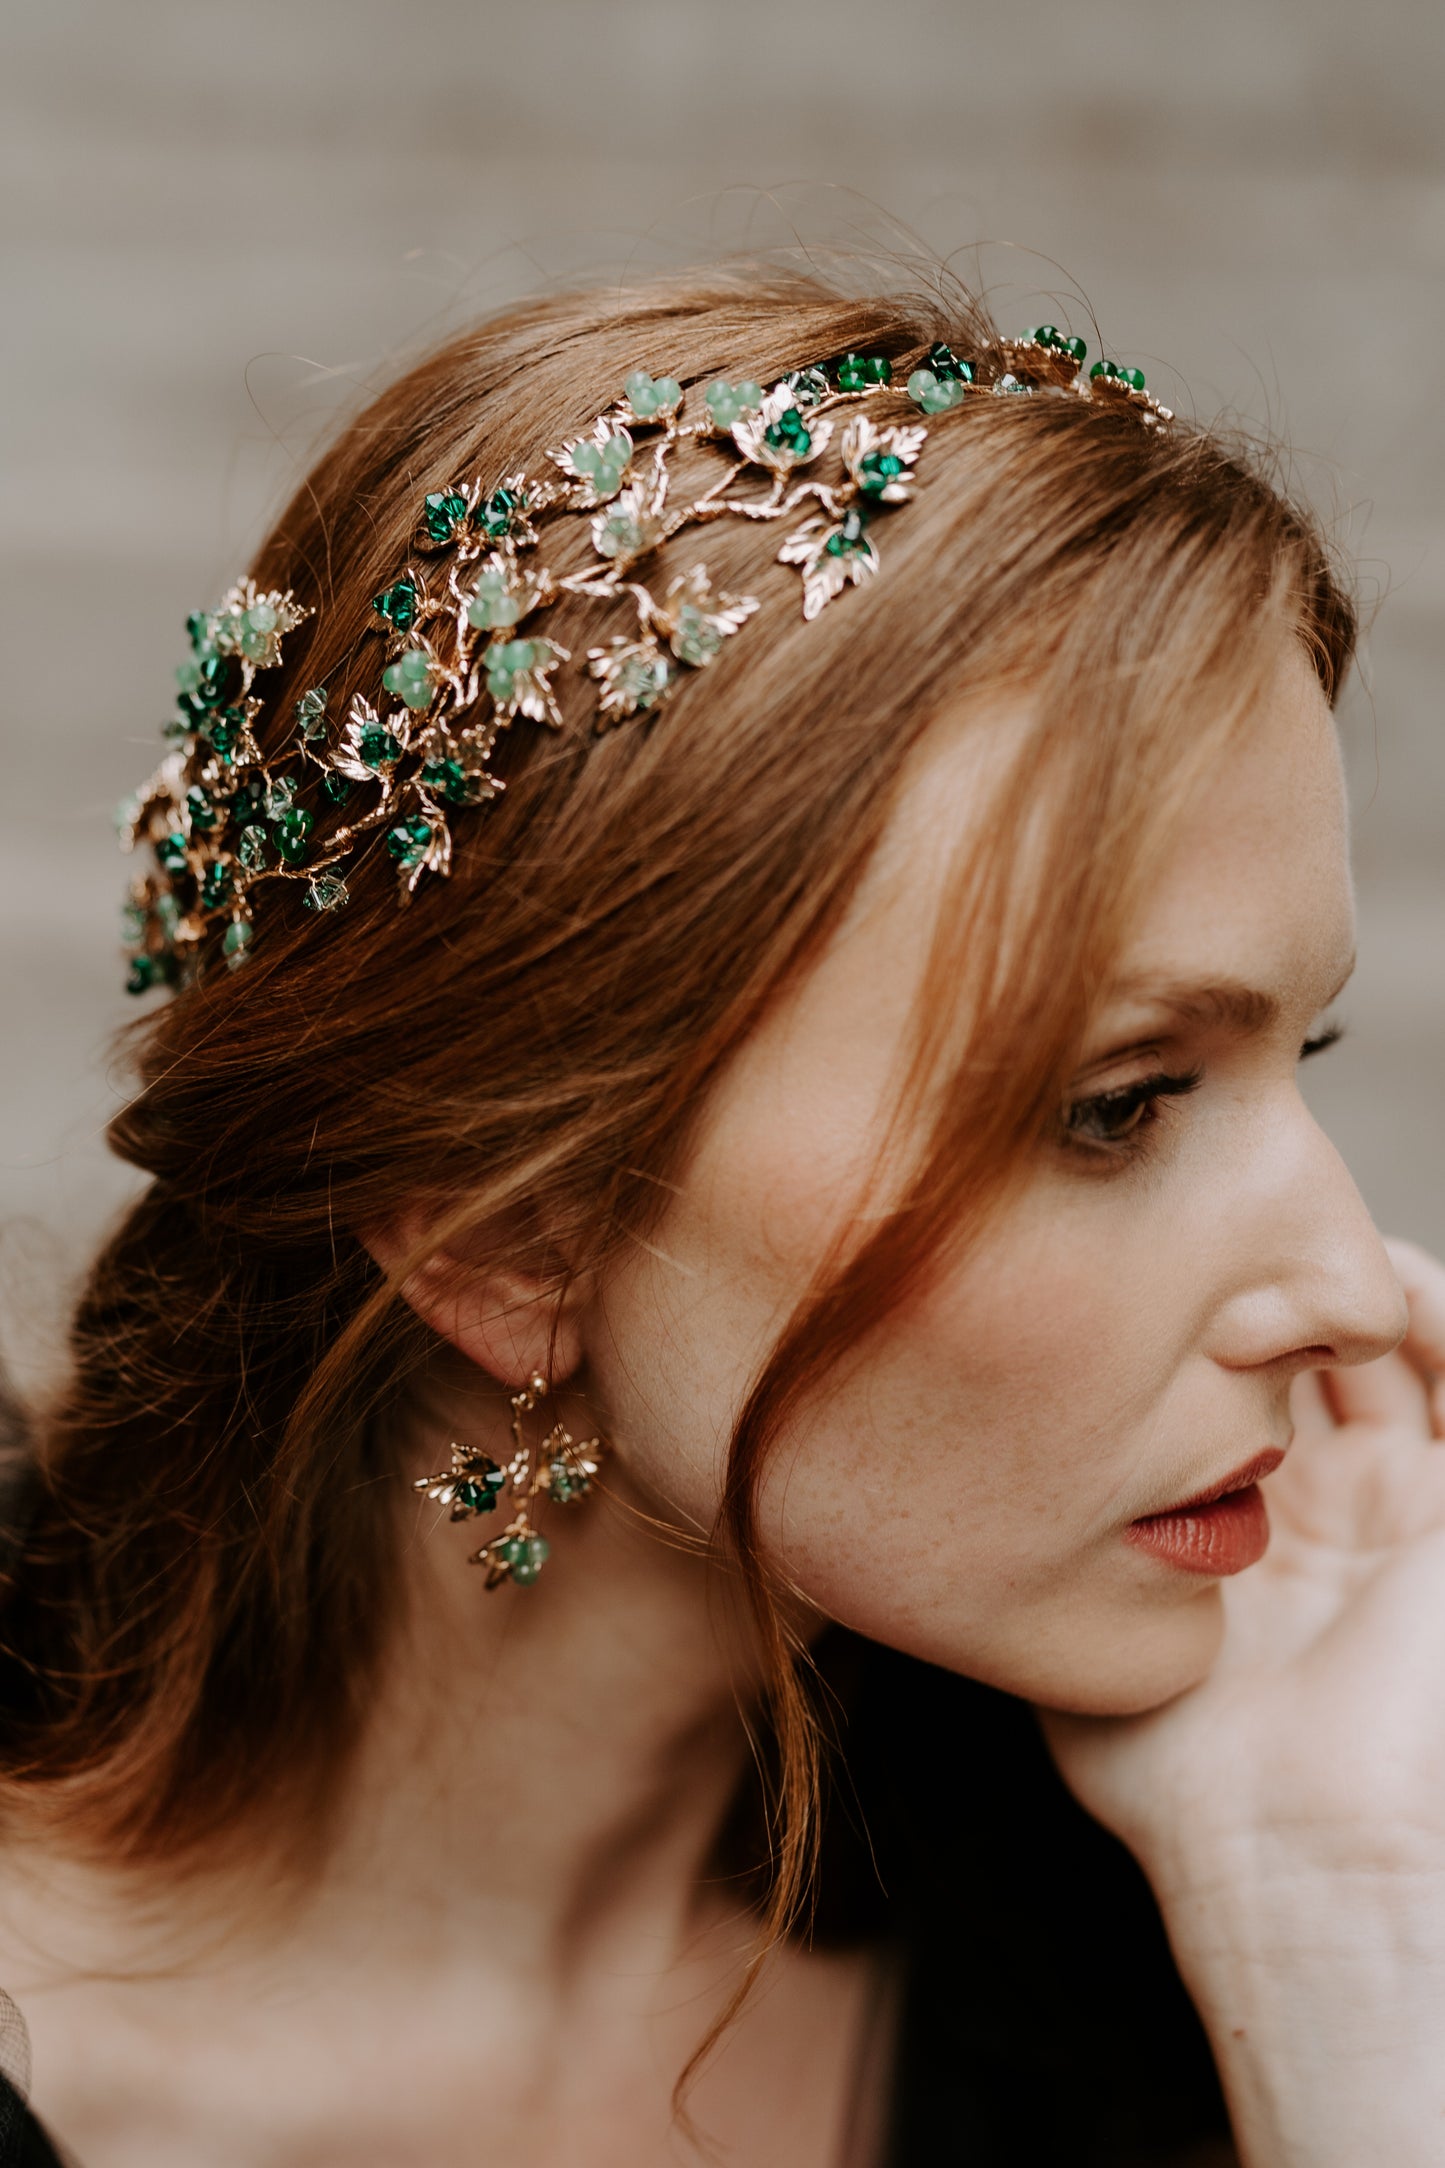 Ivy Emerald Earrings